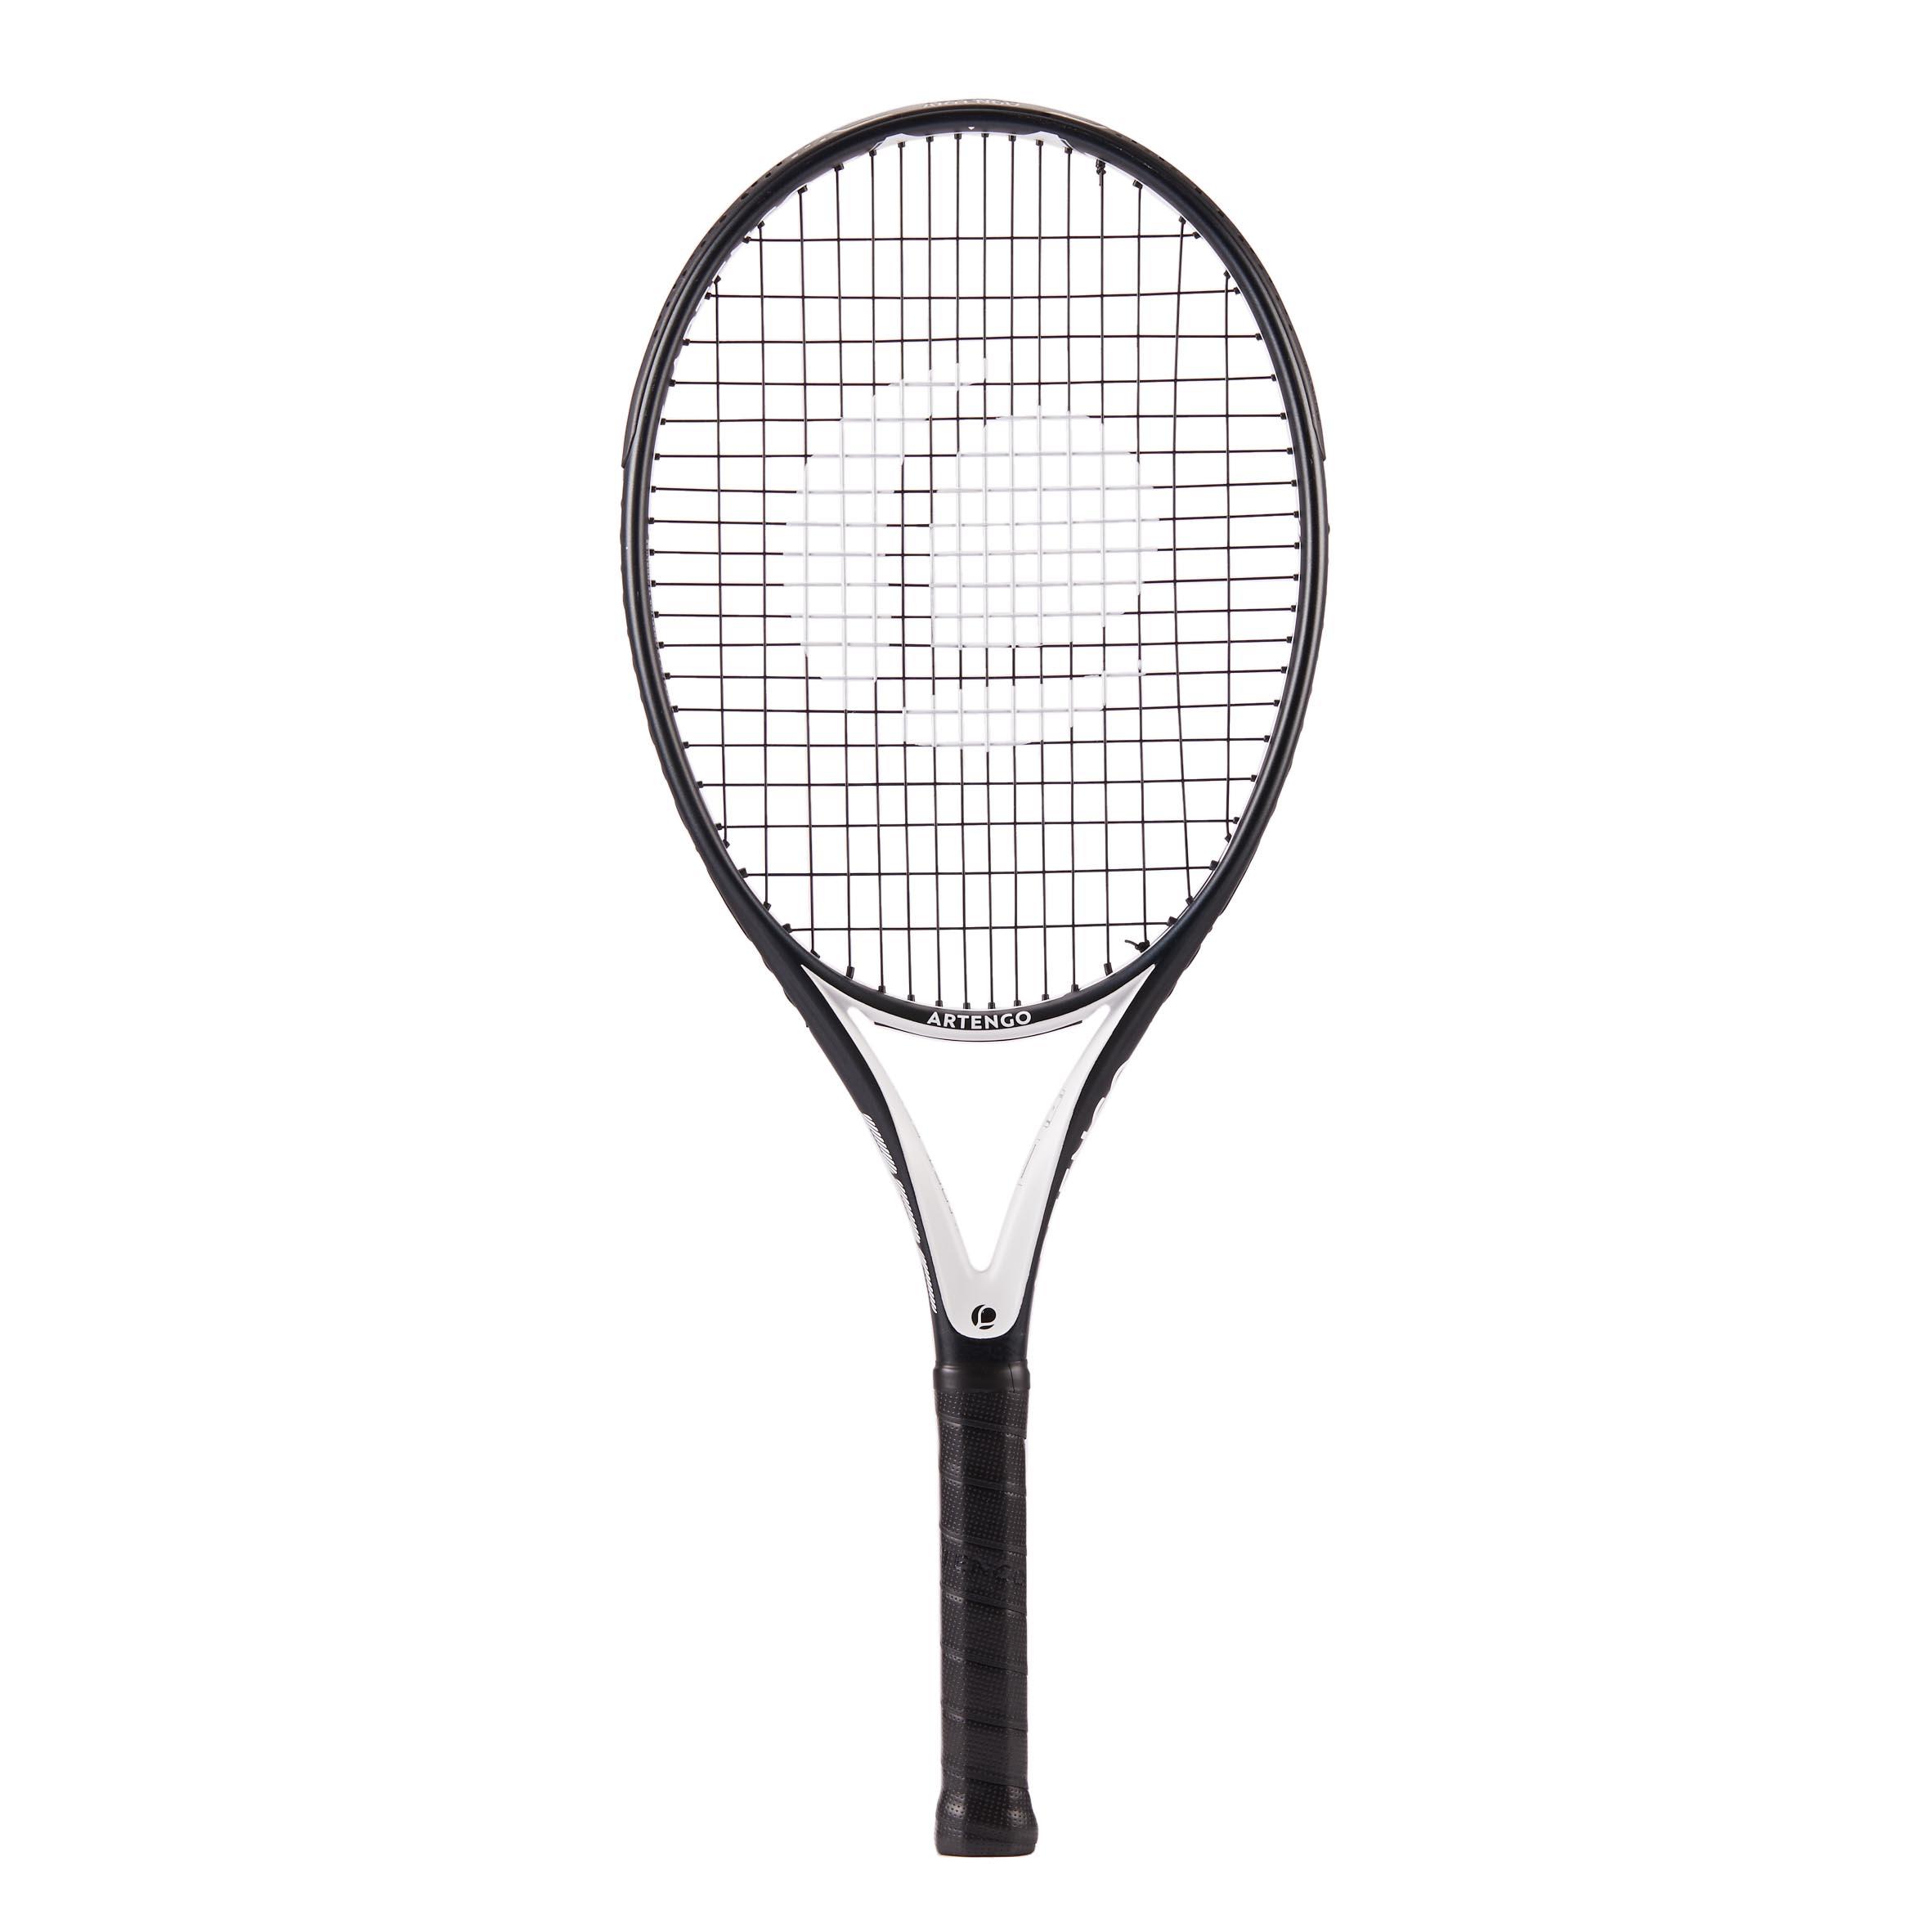 TR860 Adult Oversize Tennis Racket 